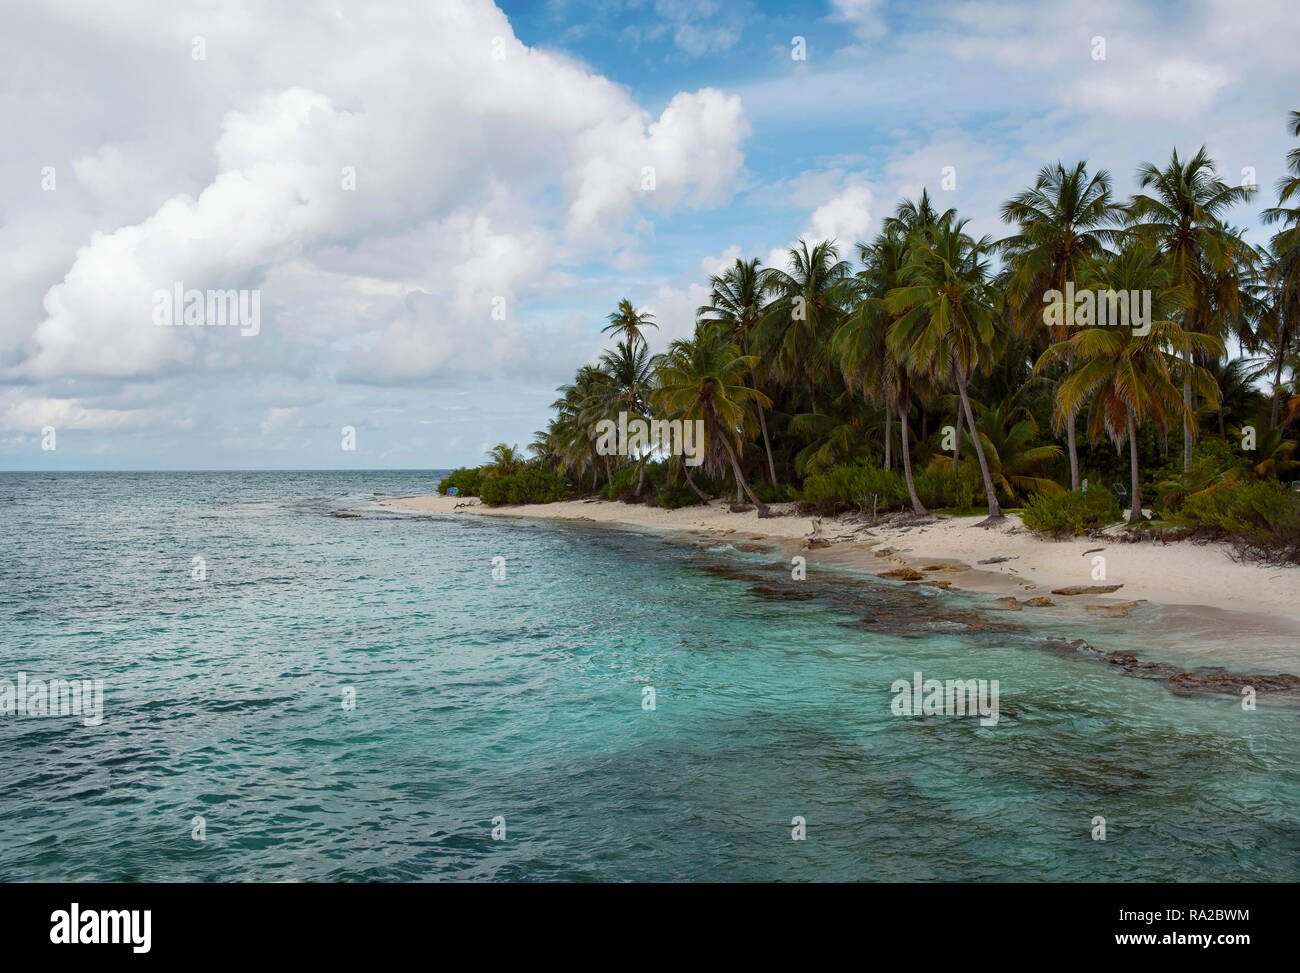 Viaggio tropicale destinazione: Johnny Cay isolotto vicino a San Andrés isola, Colombia. Ott 2018 Foto Stock